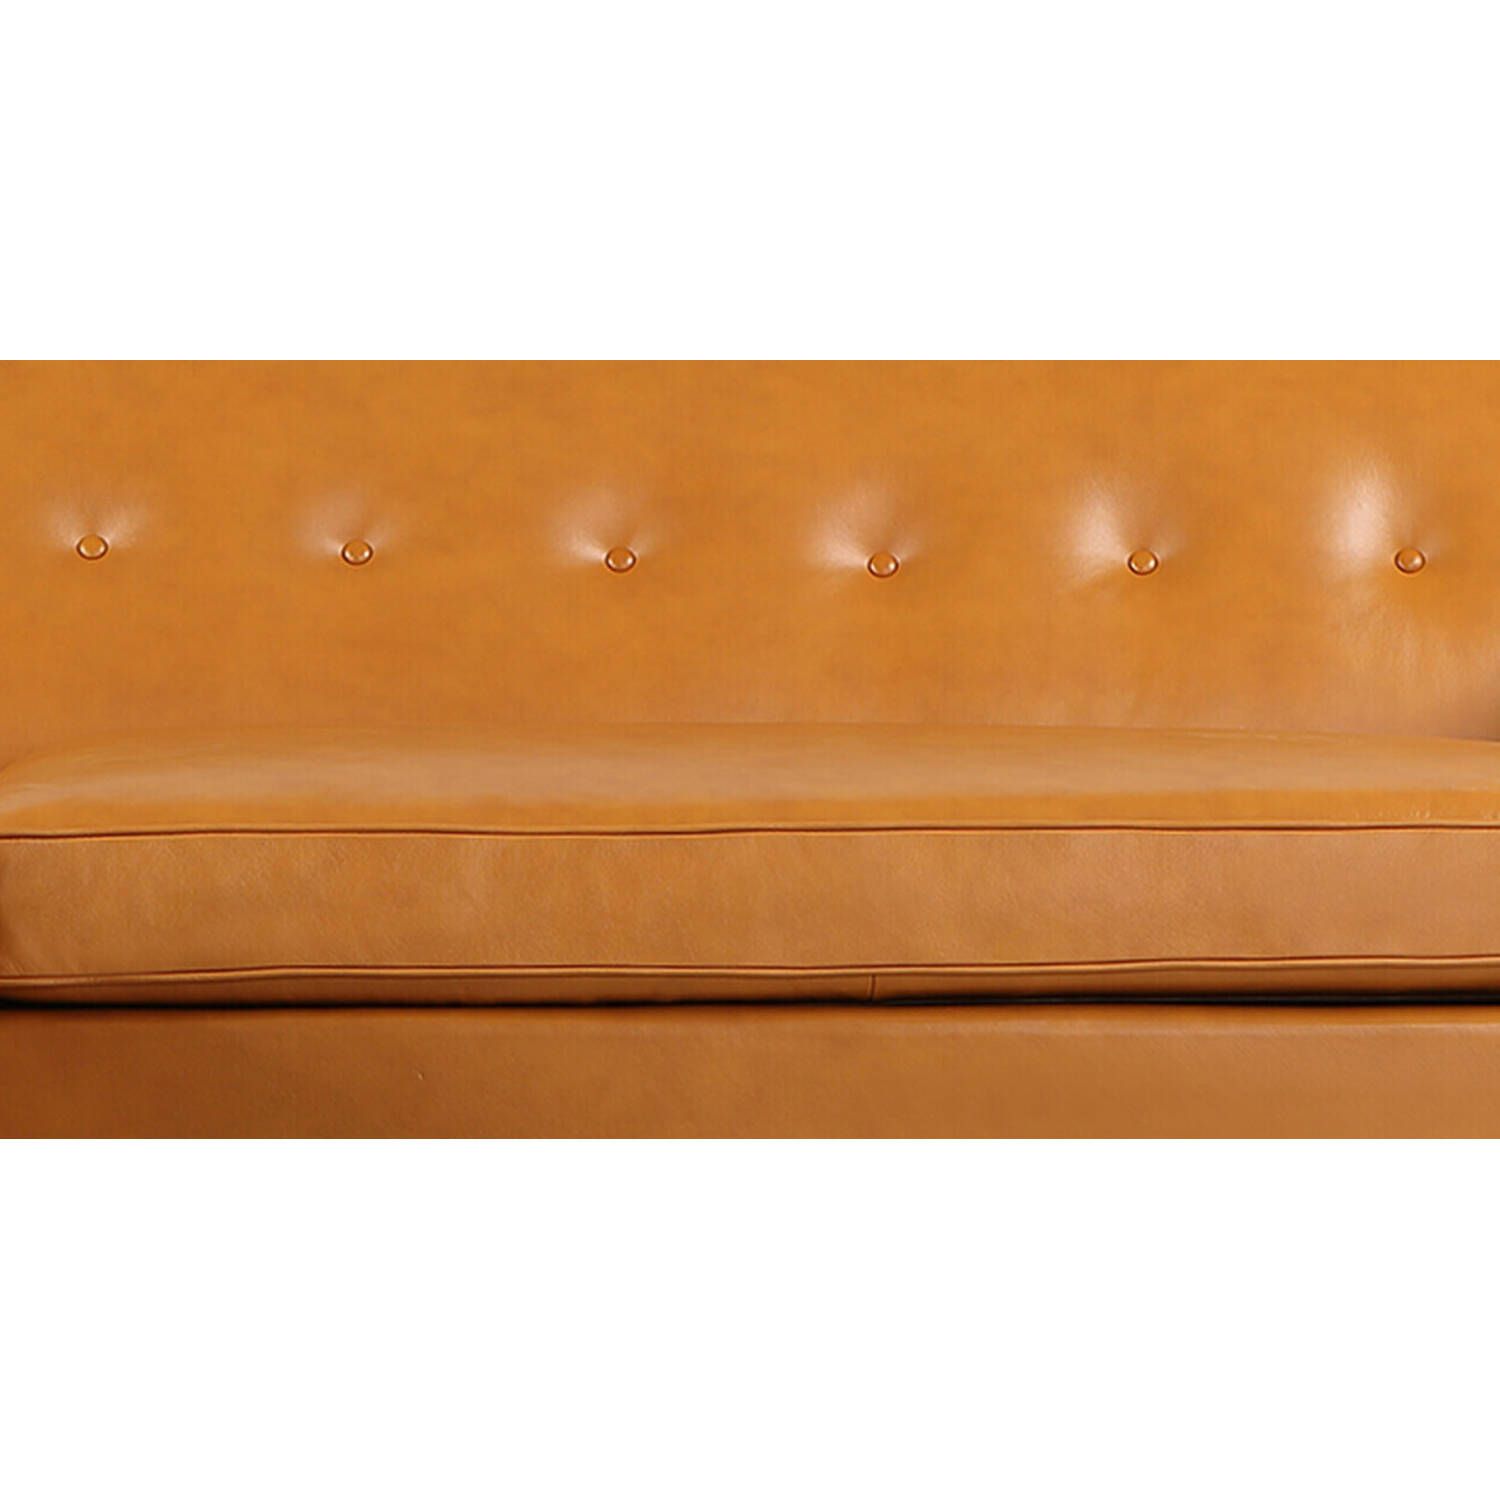 Угловой диван Eleanor, оранжевый кожаный